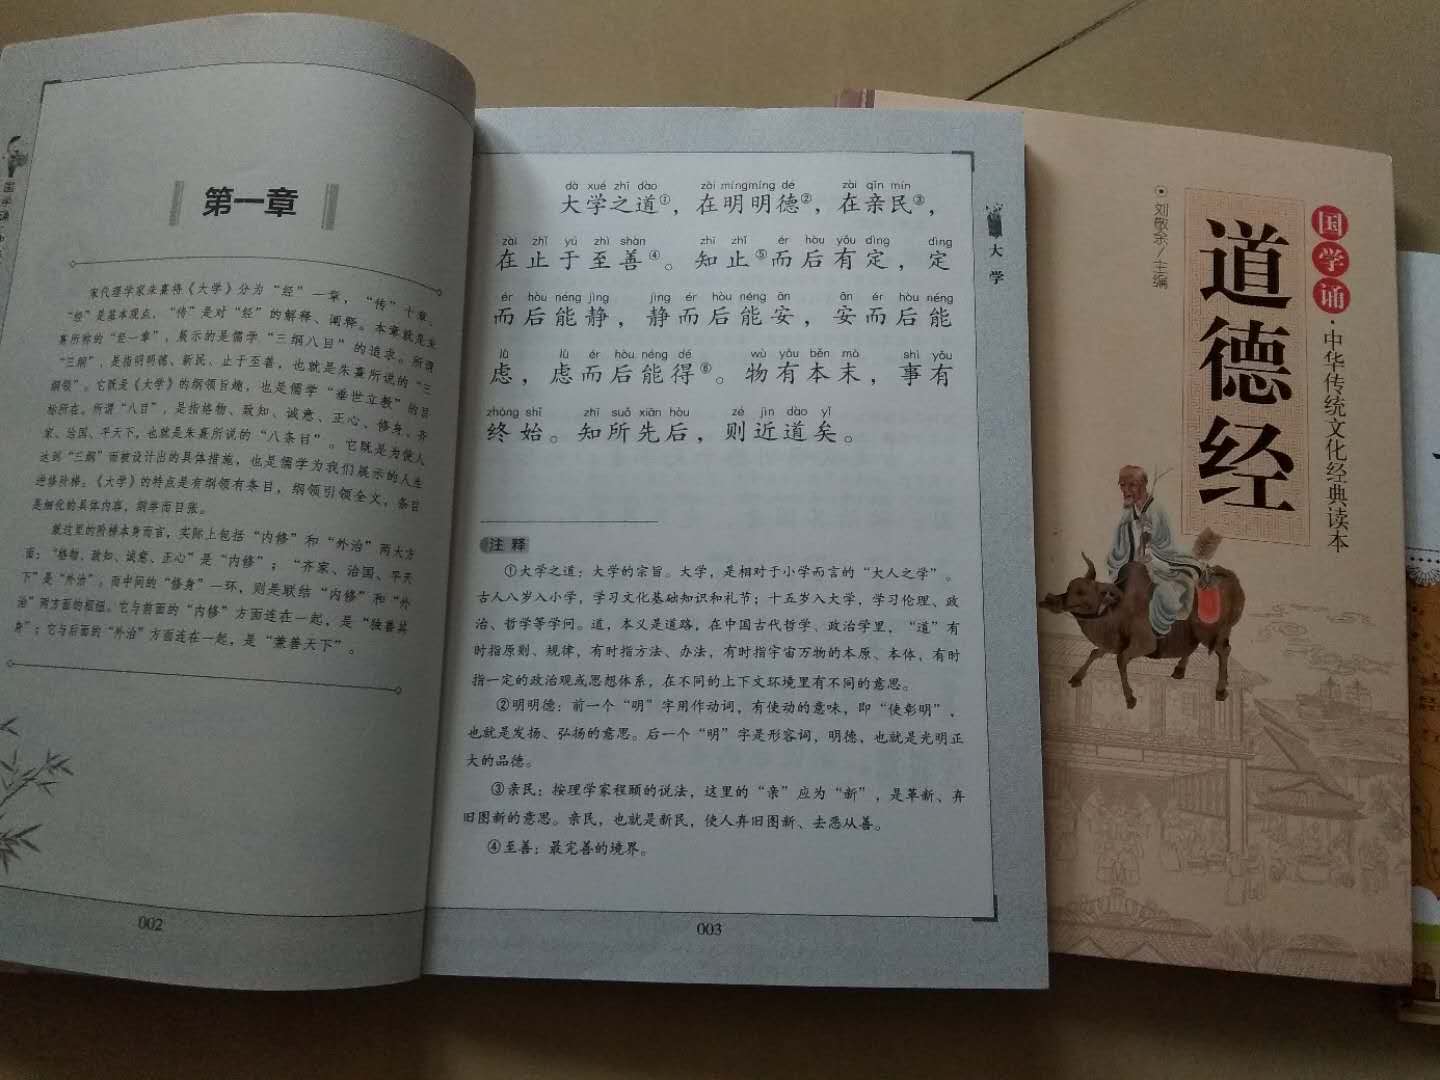 扫了书上的二维码听读，确实不错，内容译文比较简单，适合小学生朗诵。